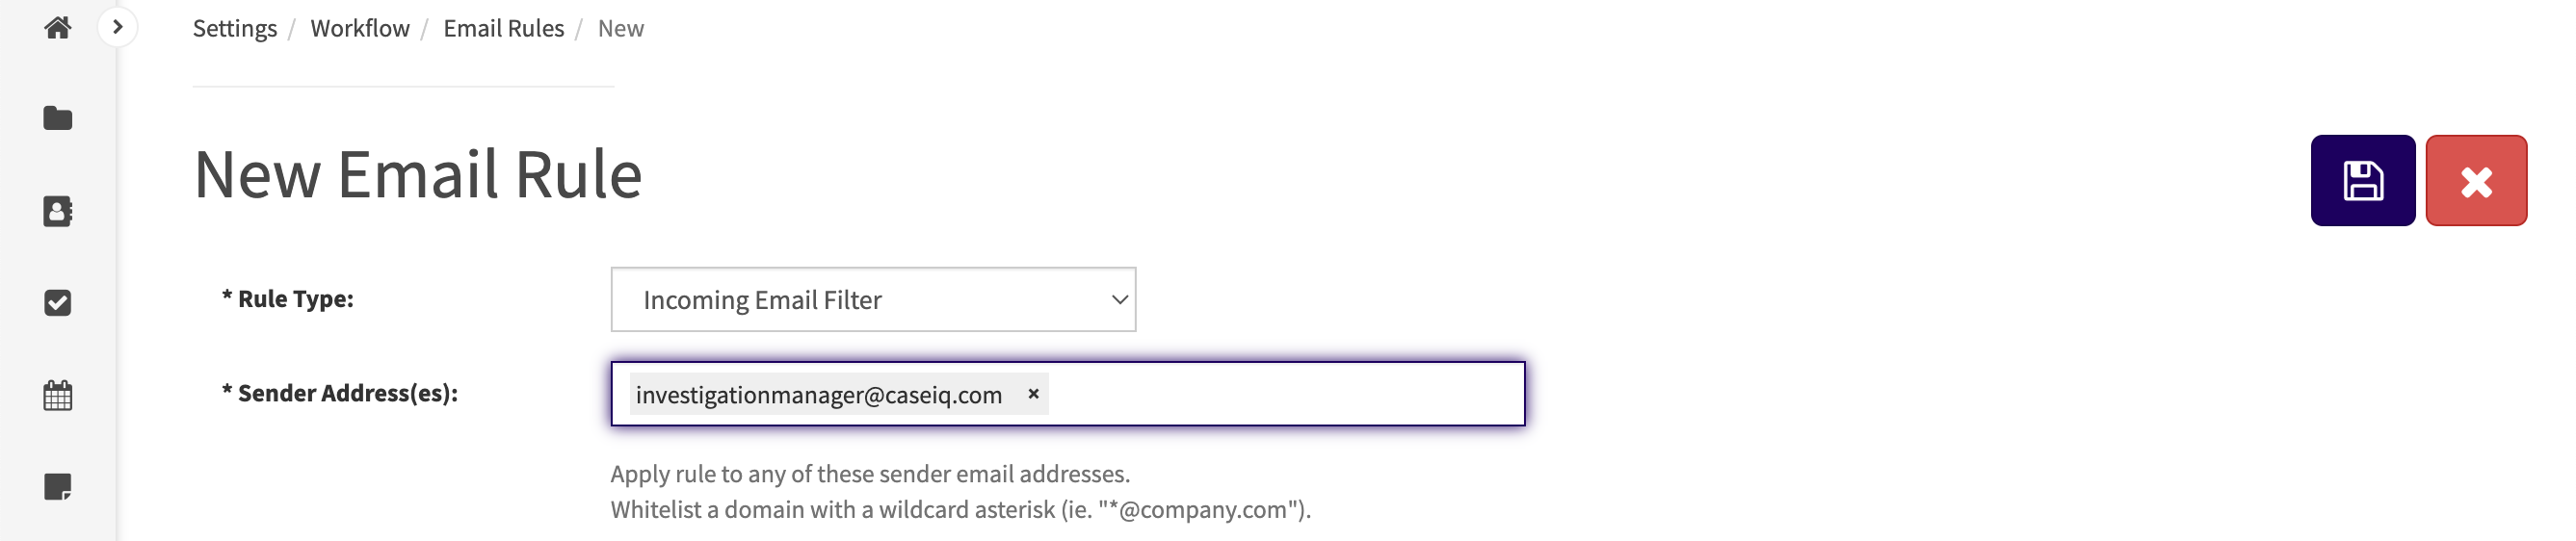 Deux e-mails ont été saisis dans le champ Adresse(s) du destinataire : "hrmanager@email.com" et "hradvisor@email.com".